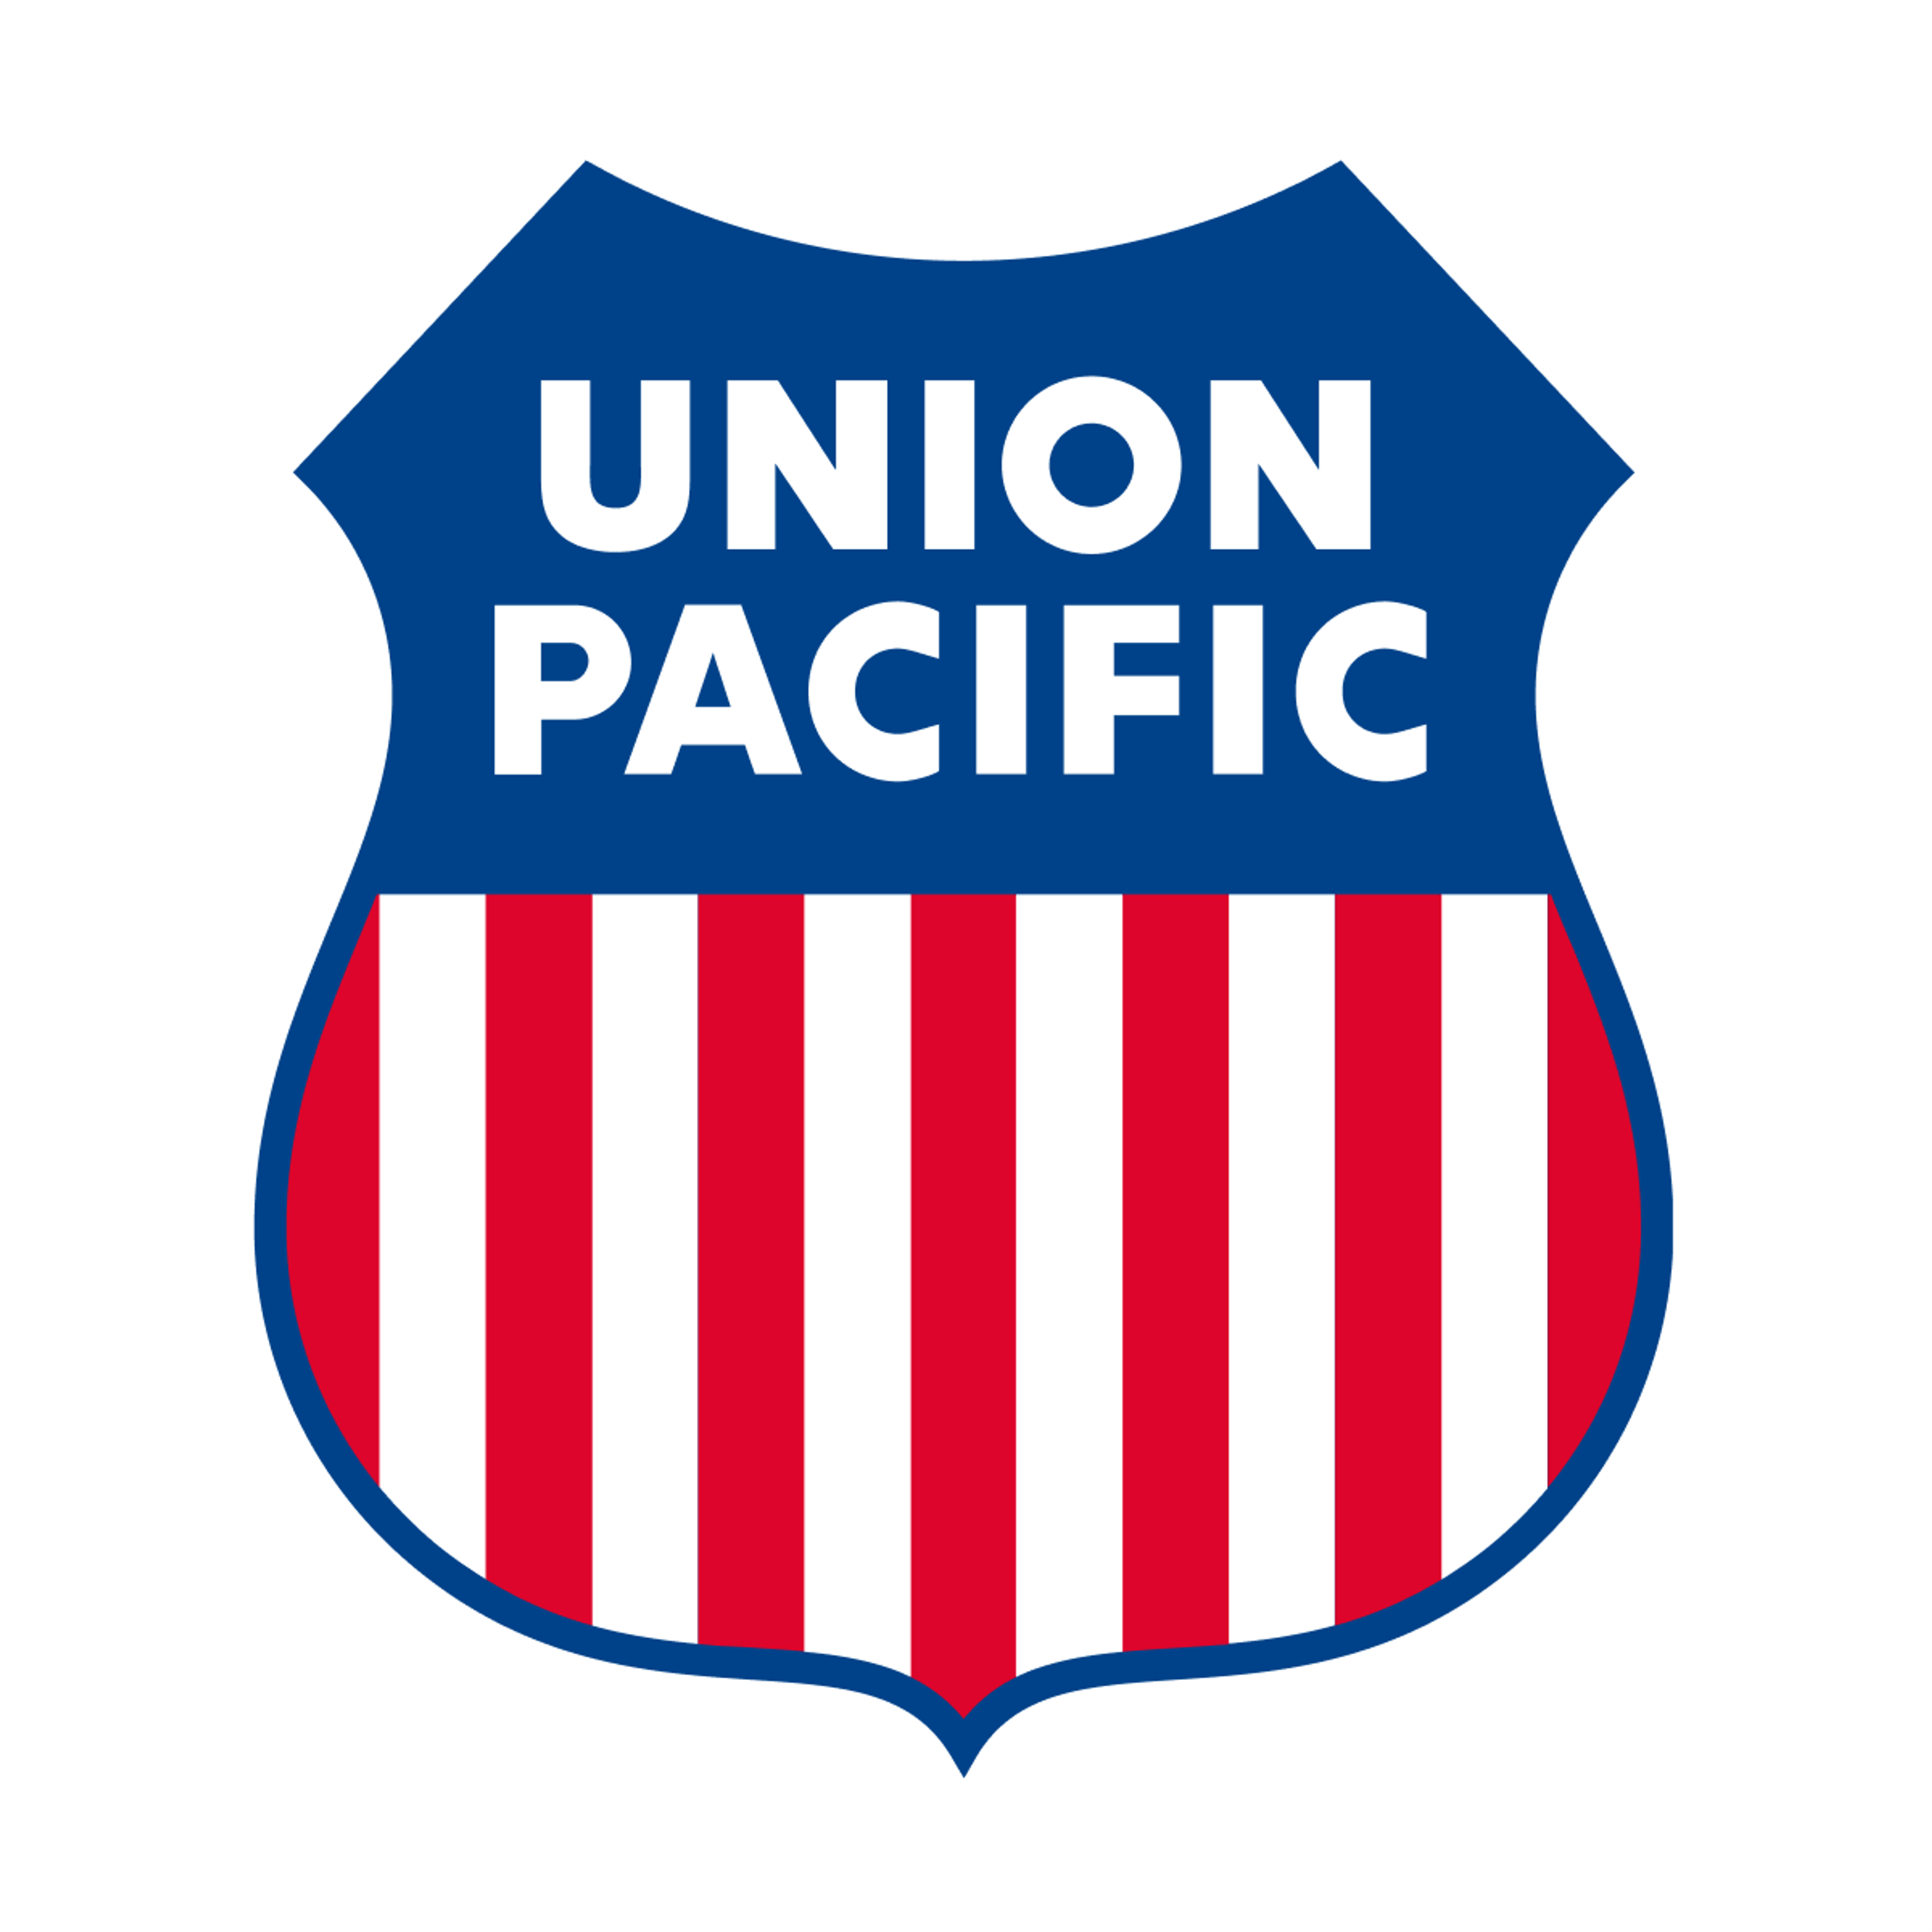 Union Pacific Railroad logo